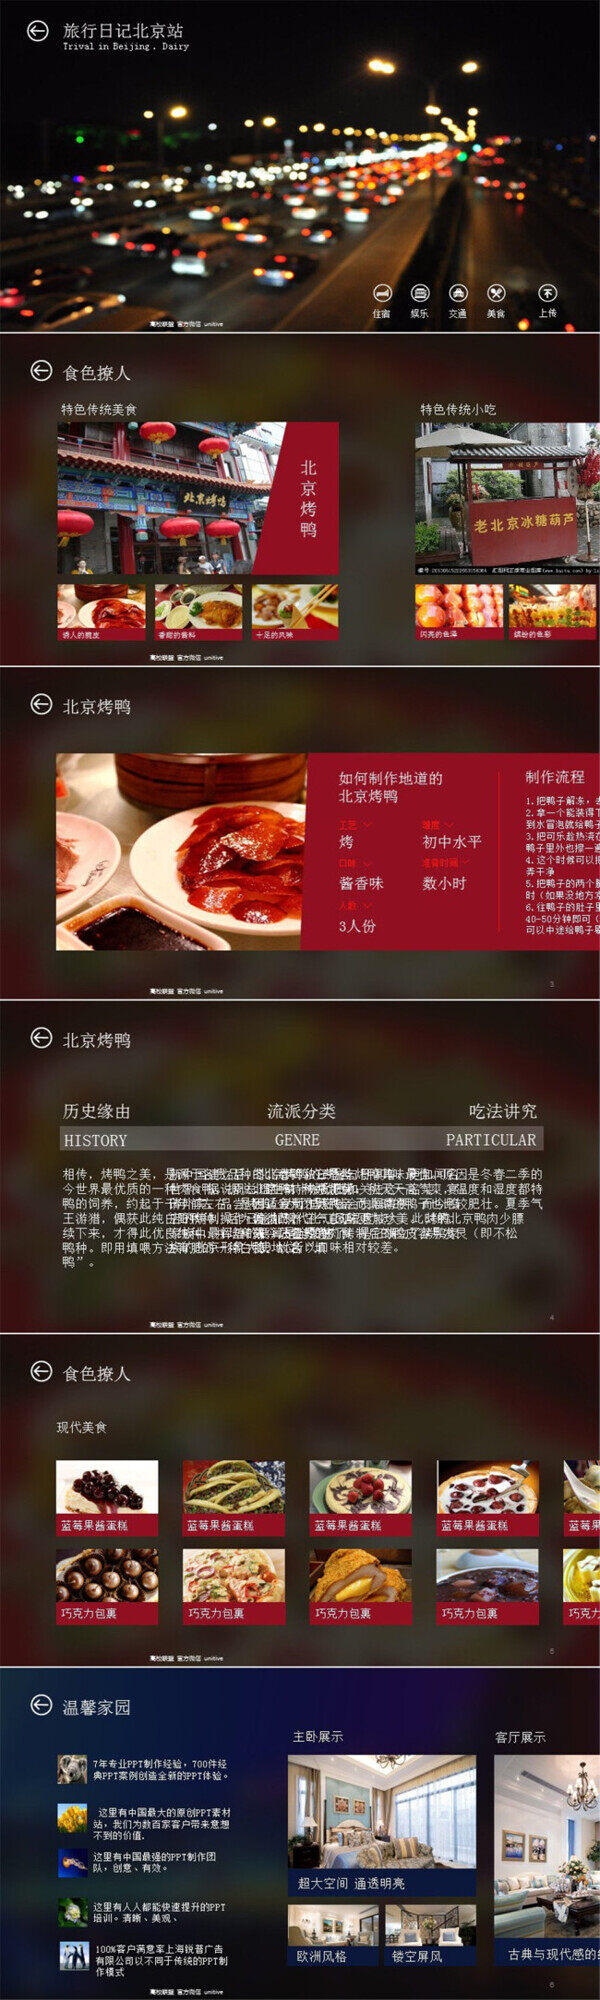 北京旅游日记ios风格ppt模板